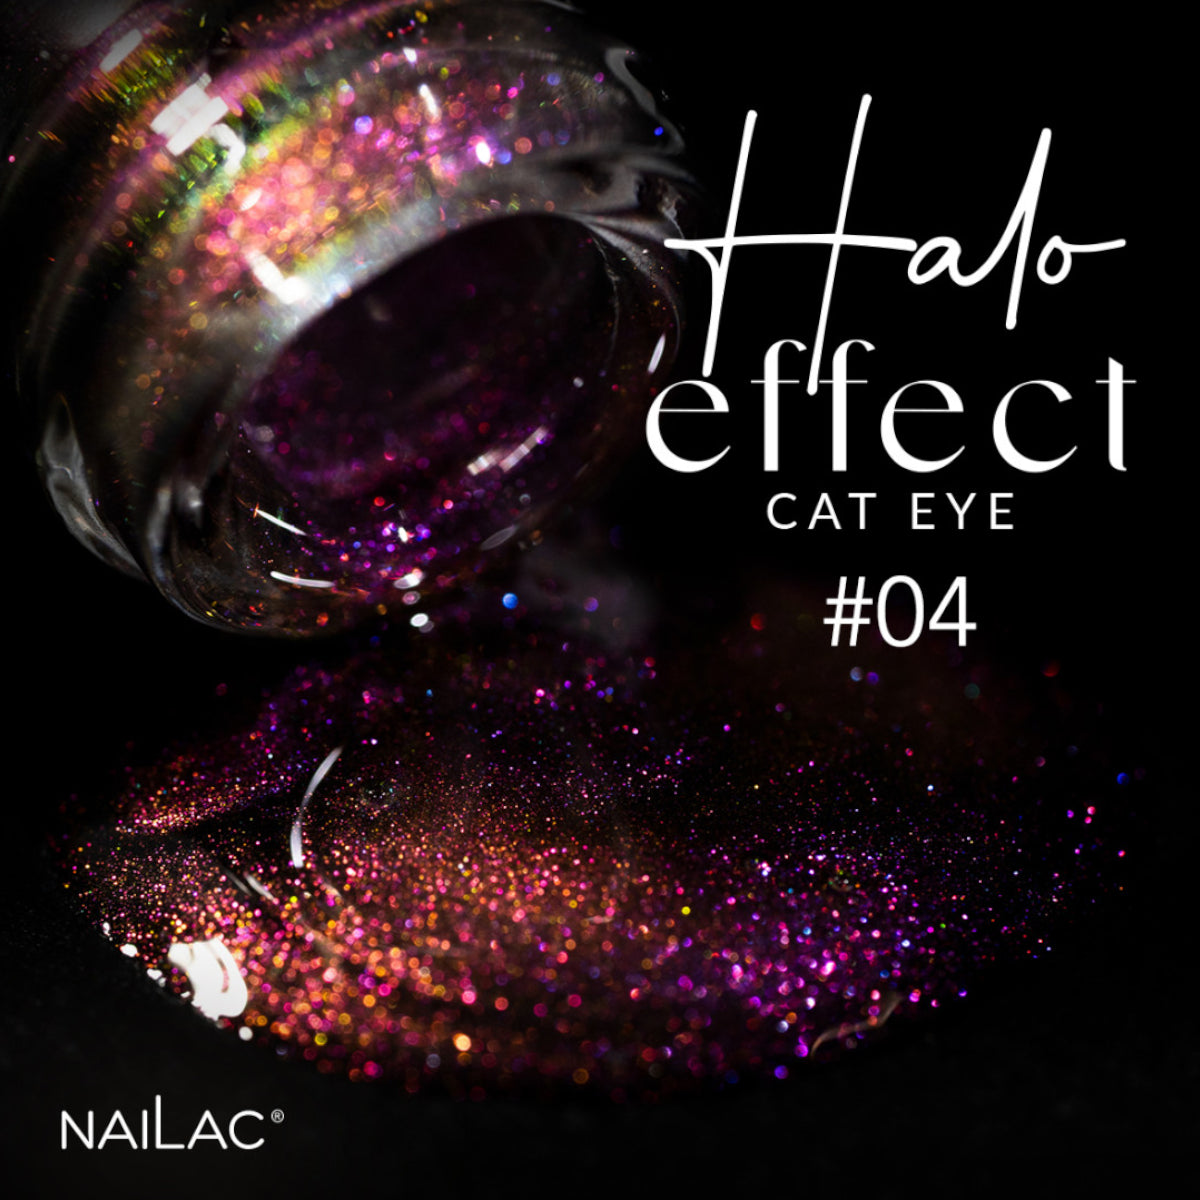 NaiLac UV/LED Gel Nail Polish Halo Effect Cat Eye 04 Bottle